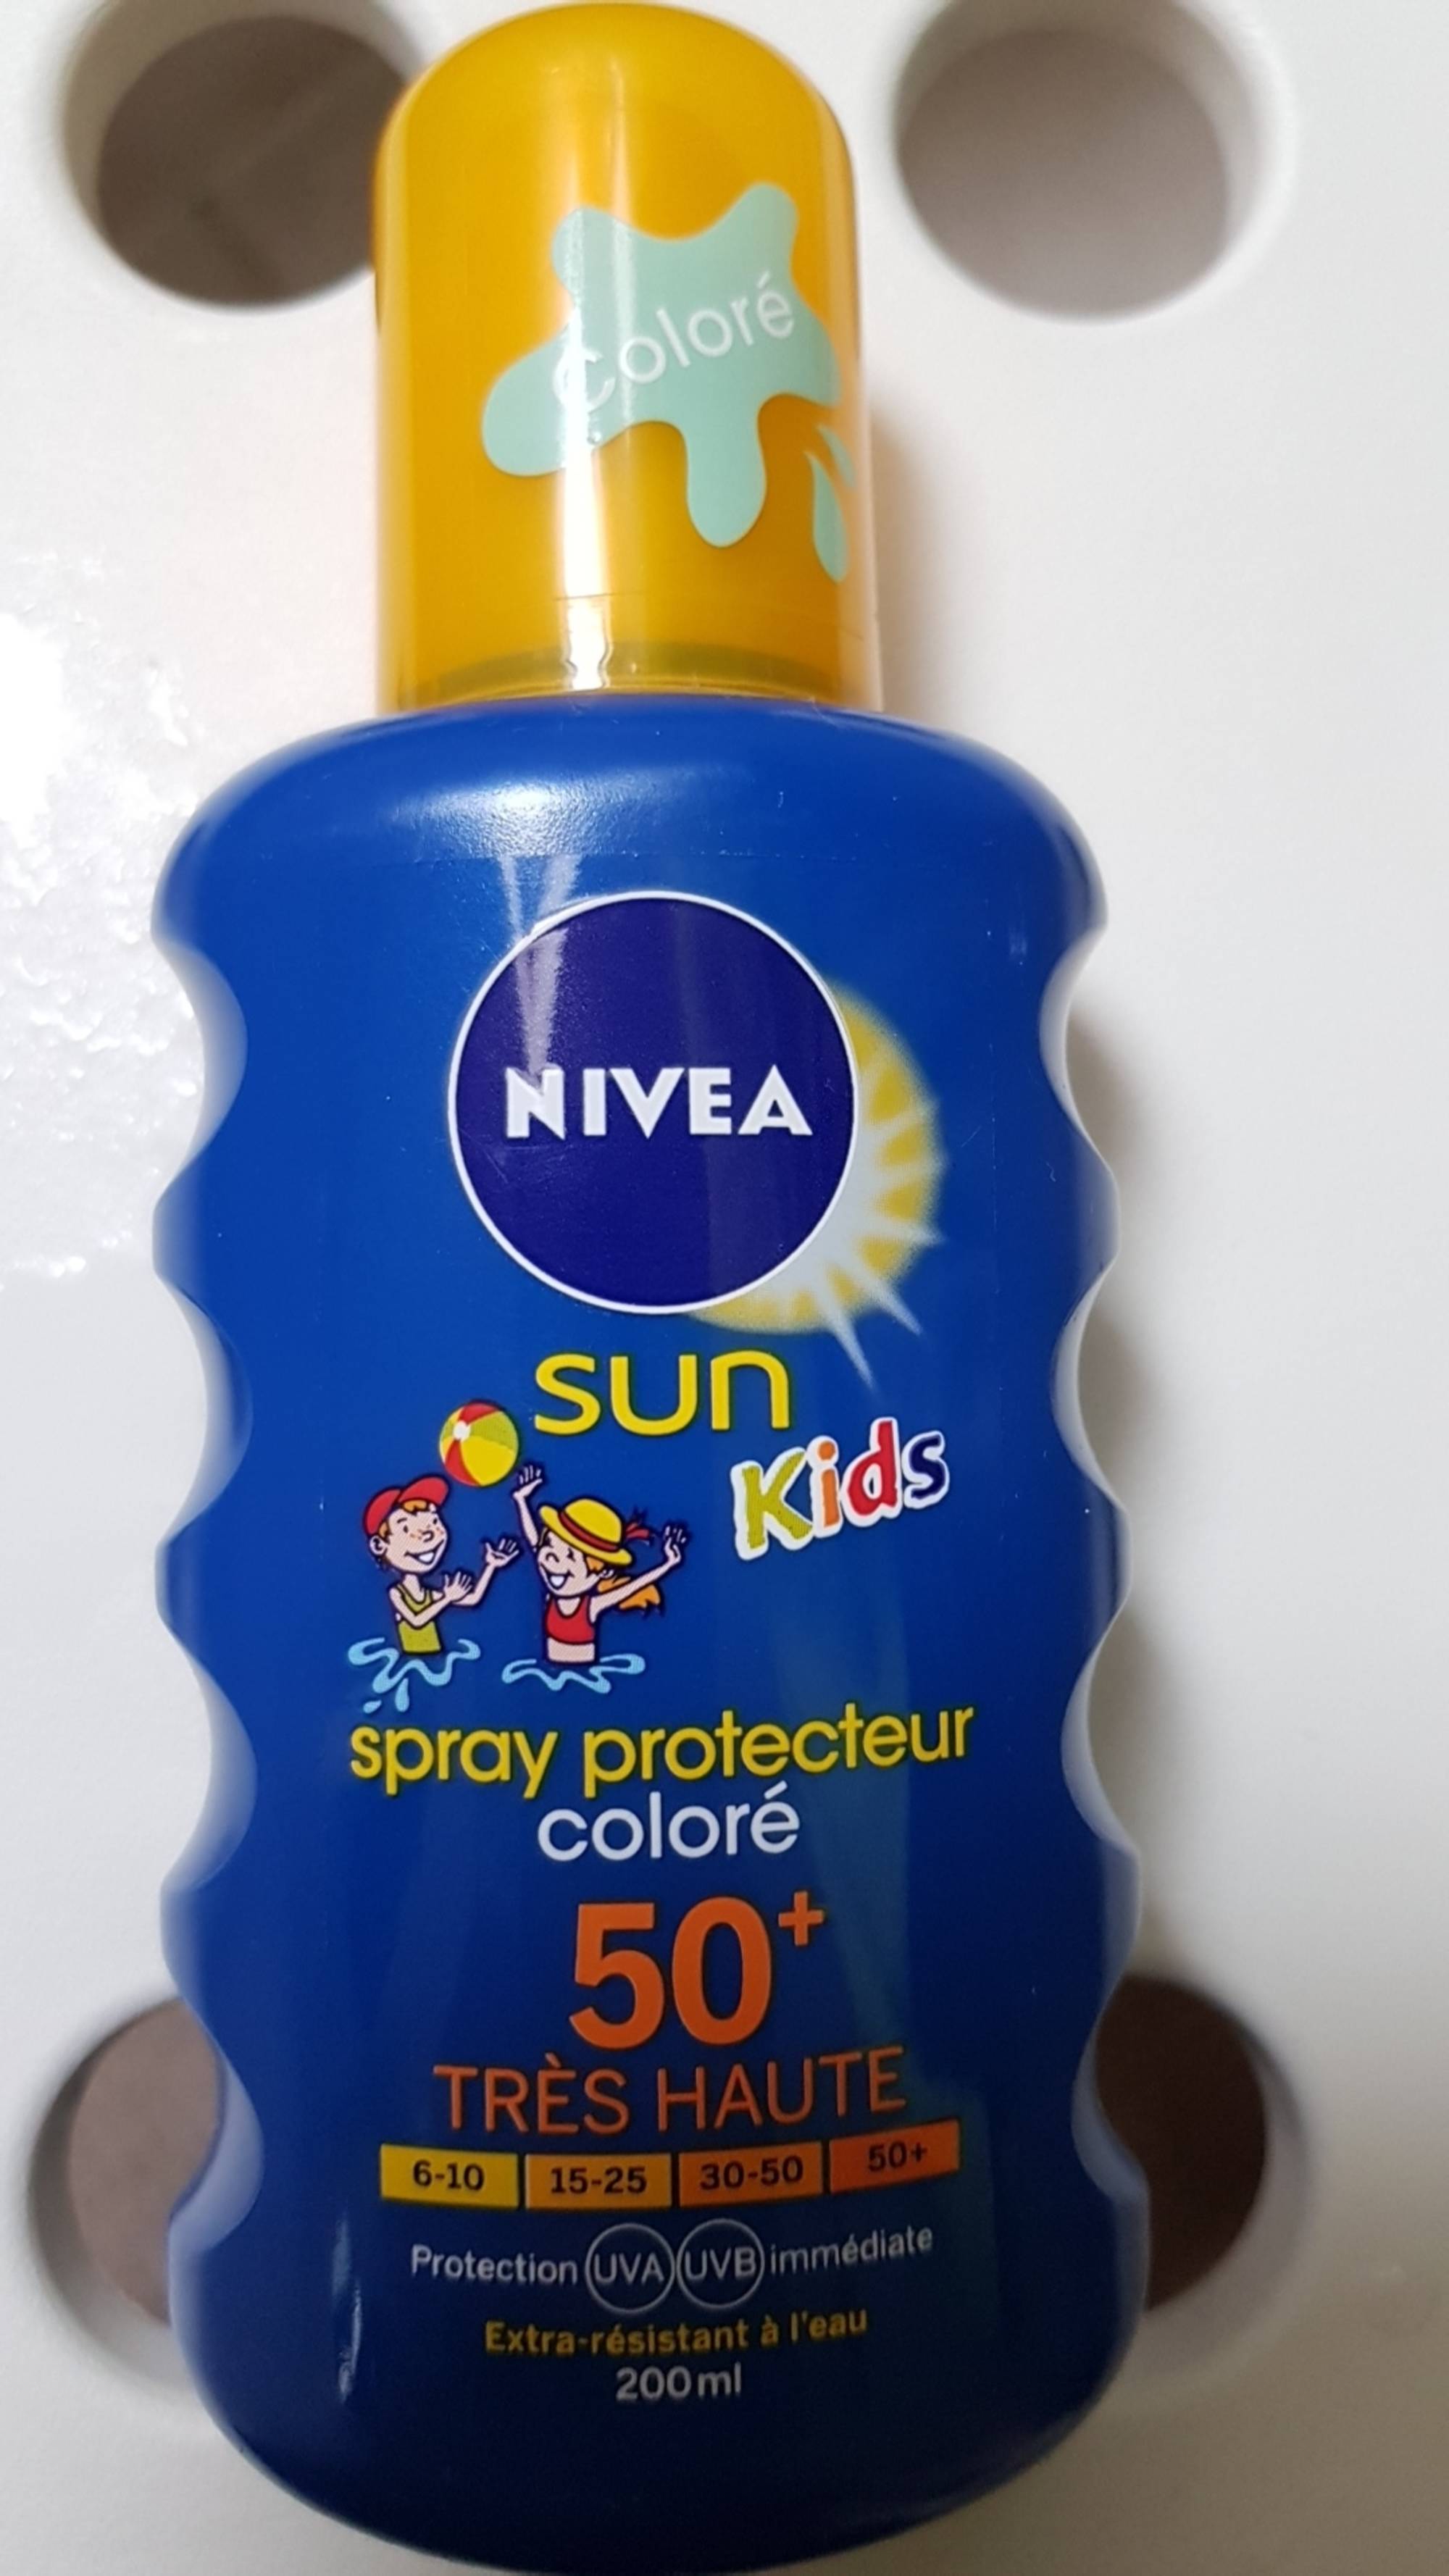 Crèmes solaires enfant - Comparatif Substances toxiques dans les